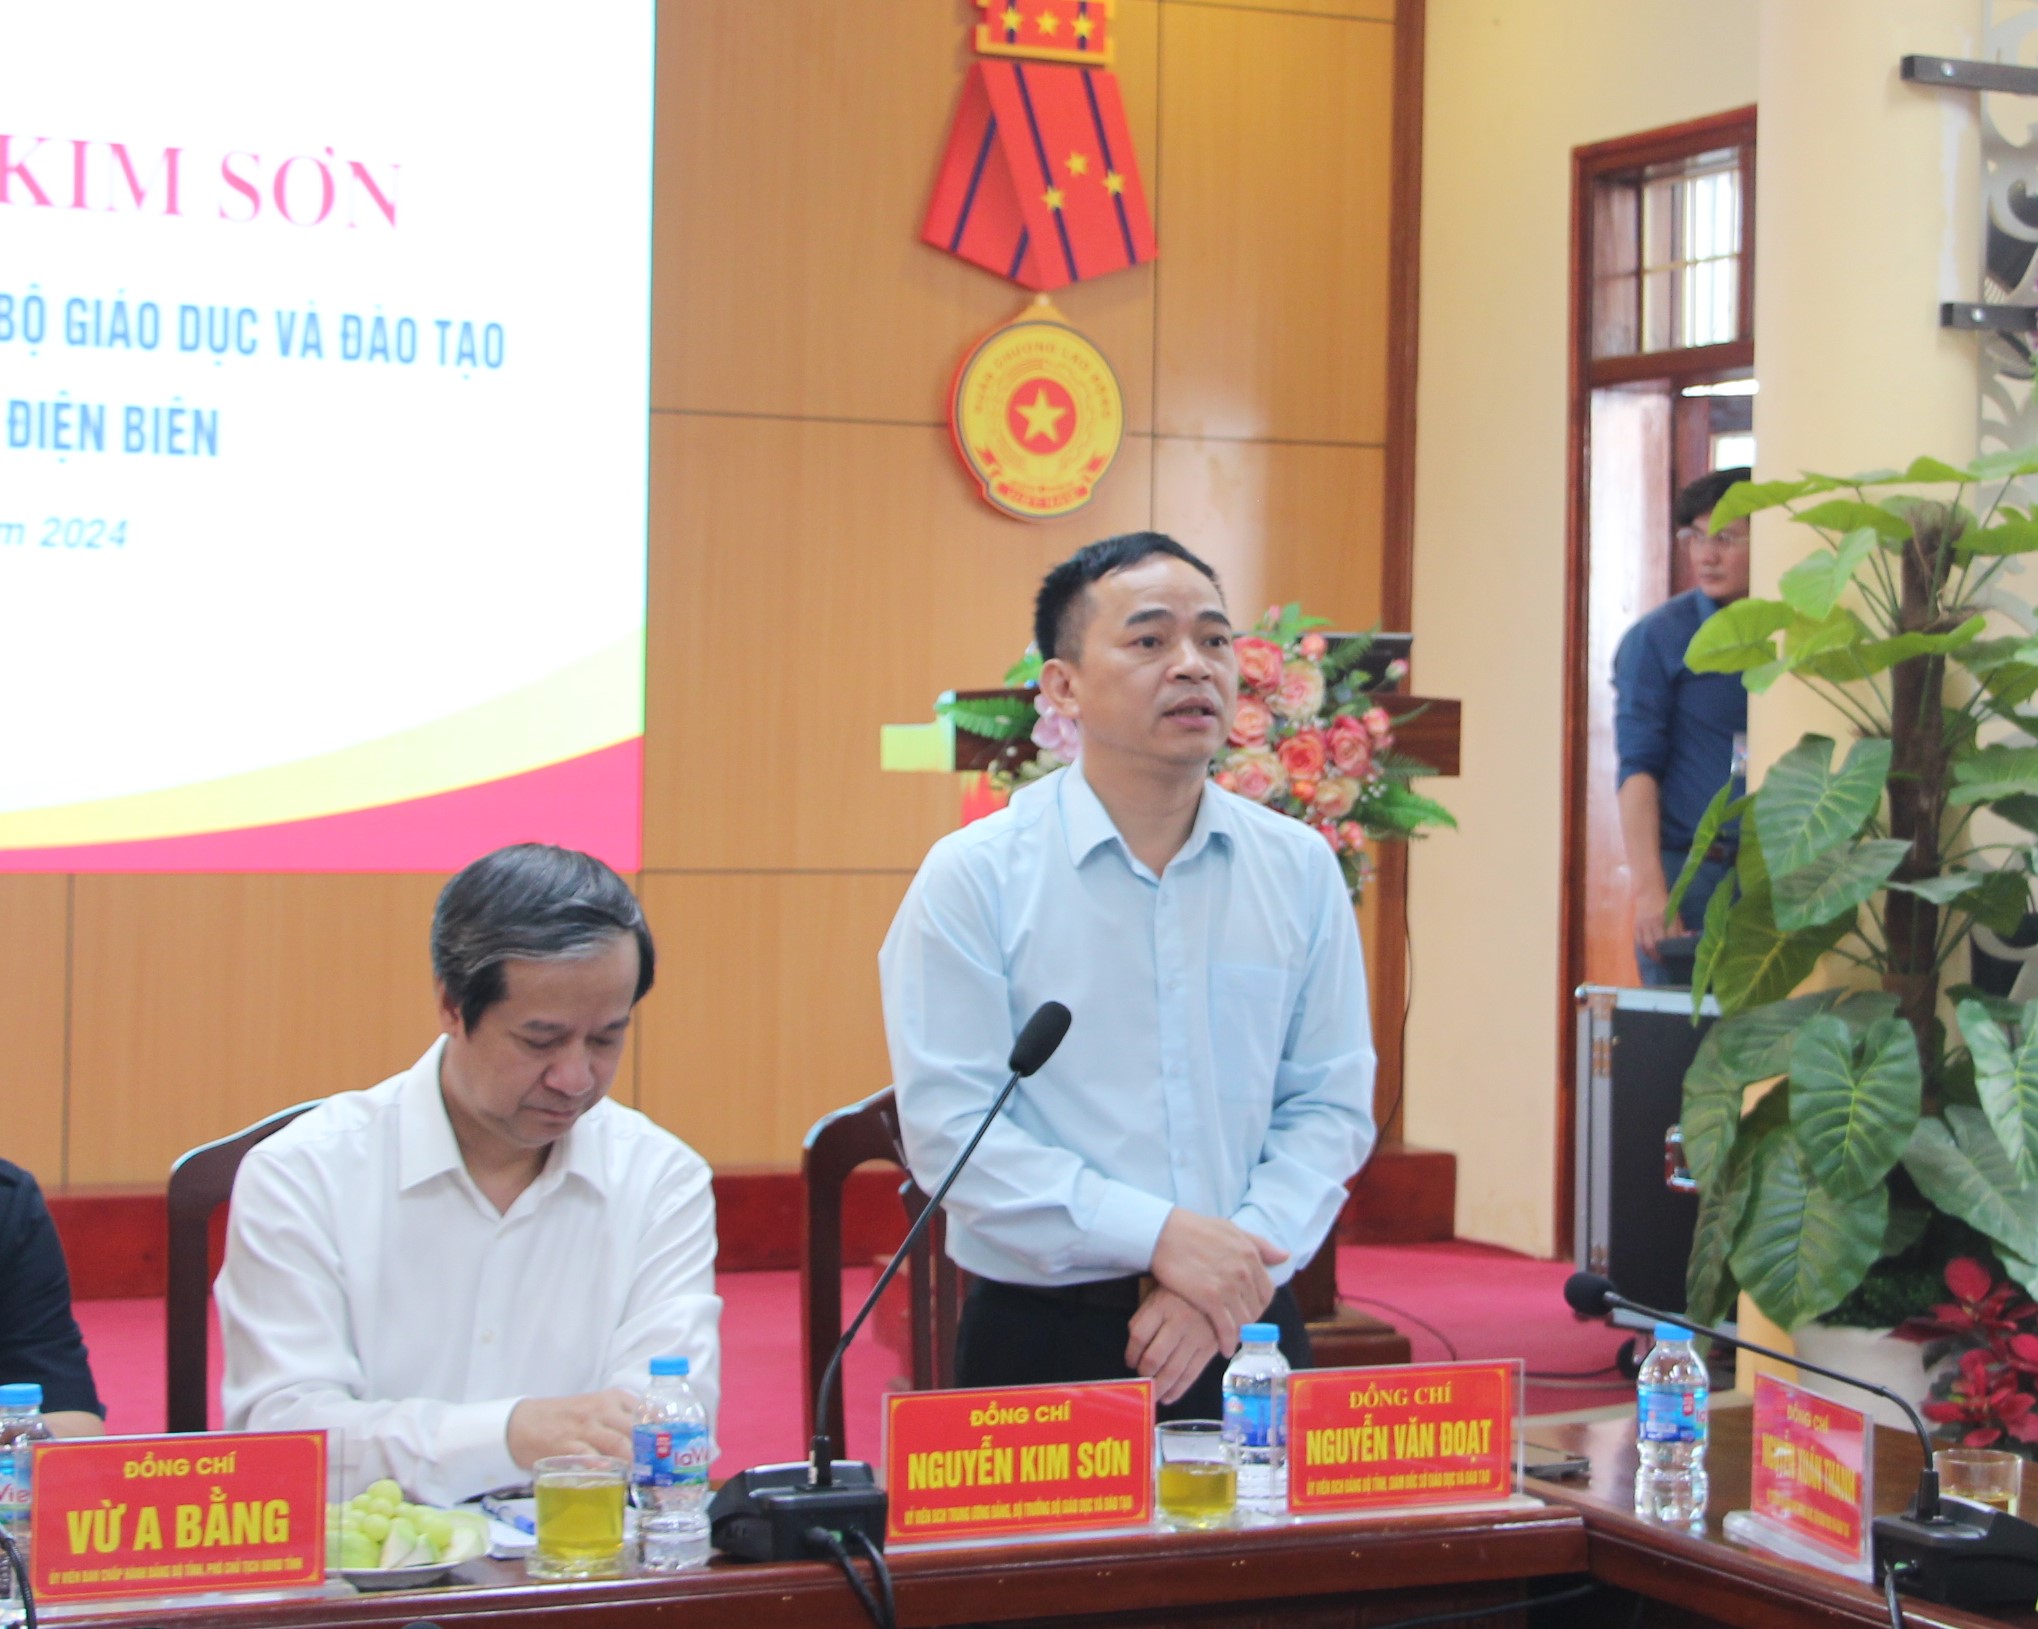 Ông Nguyễn Văn Đoạt, Giám đốc Sở GD&ĐT tỉnh Điện Biên (bên phải) phát biểu tại buổi làm việc.